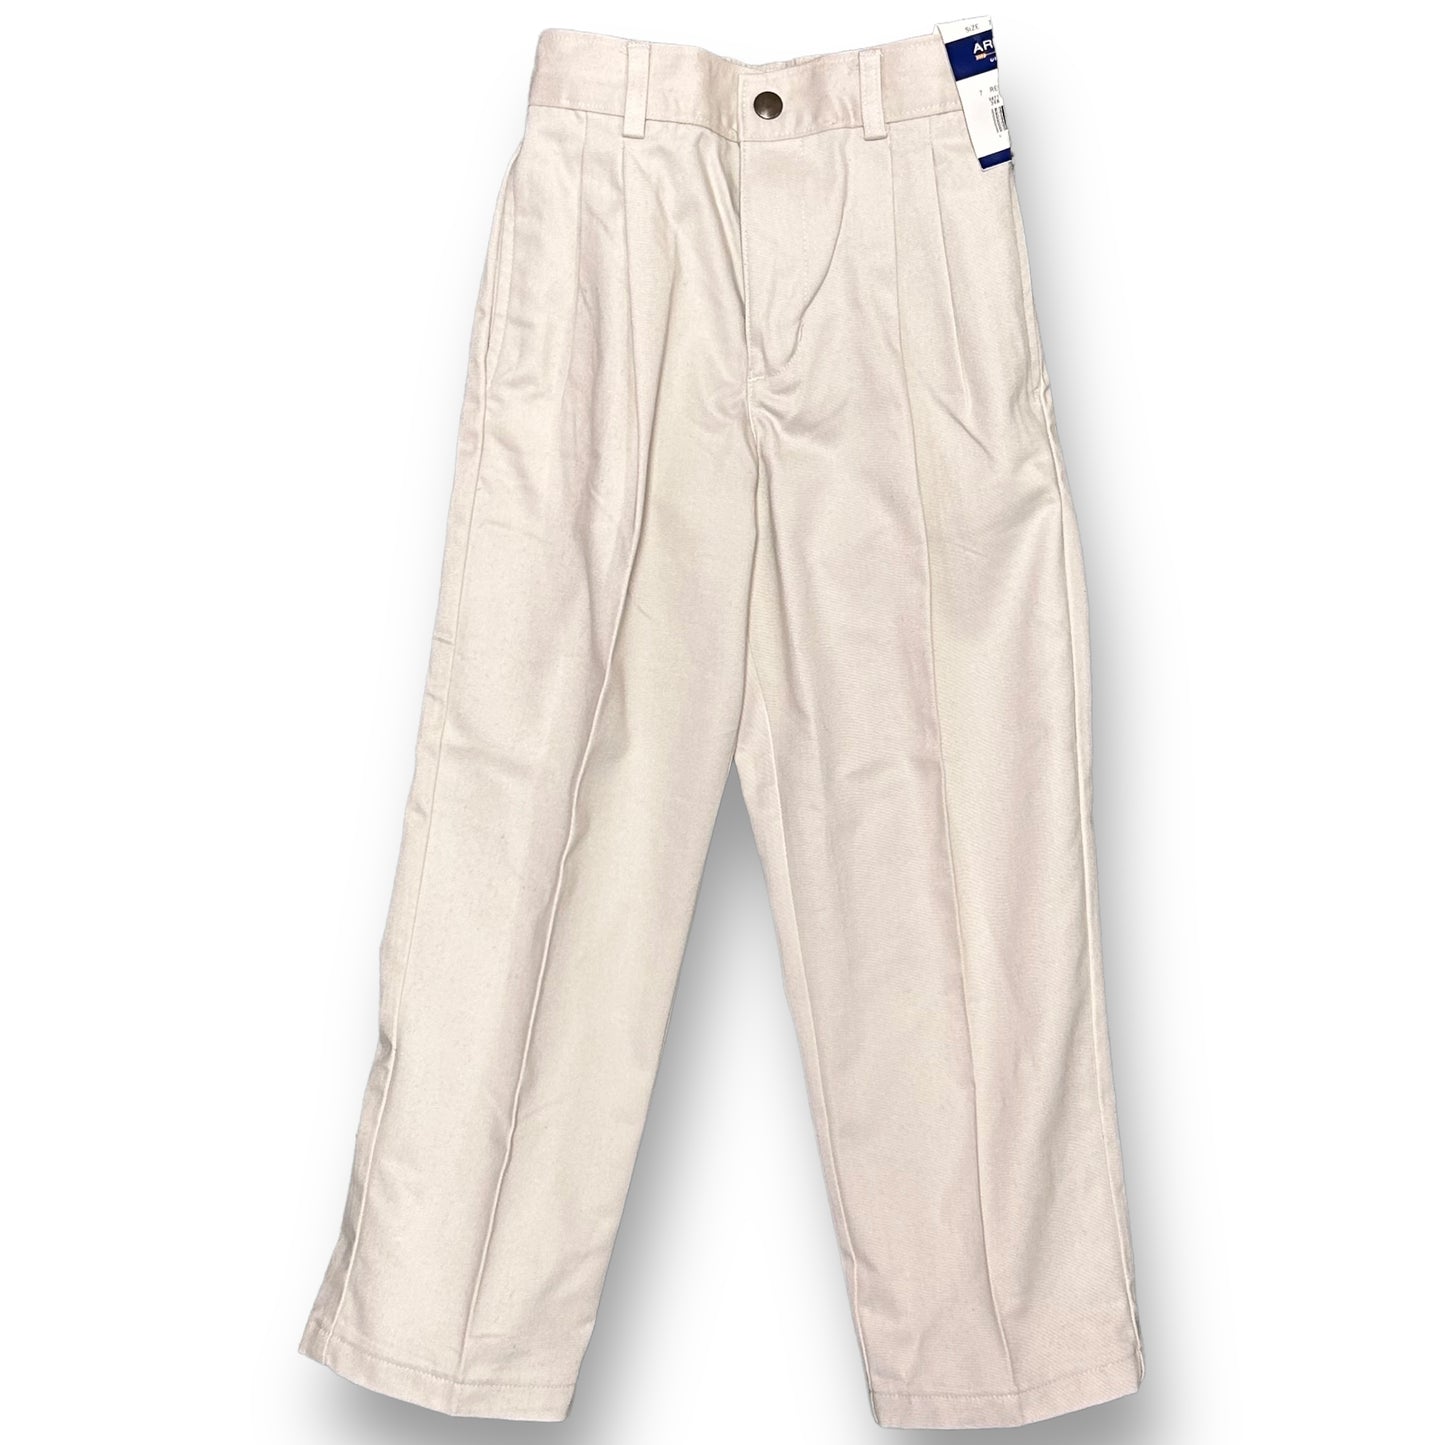 NEW! Boys Arrow Size 7 Khaki Pleated Chino Pants